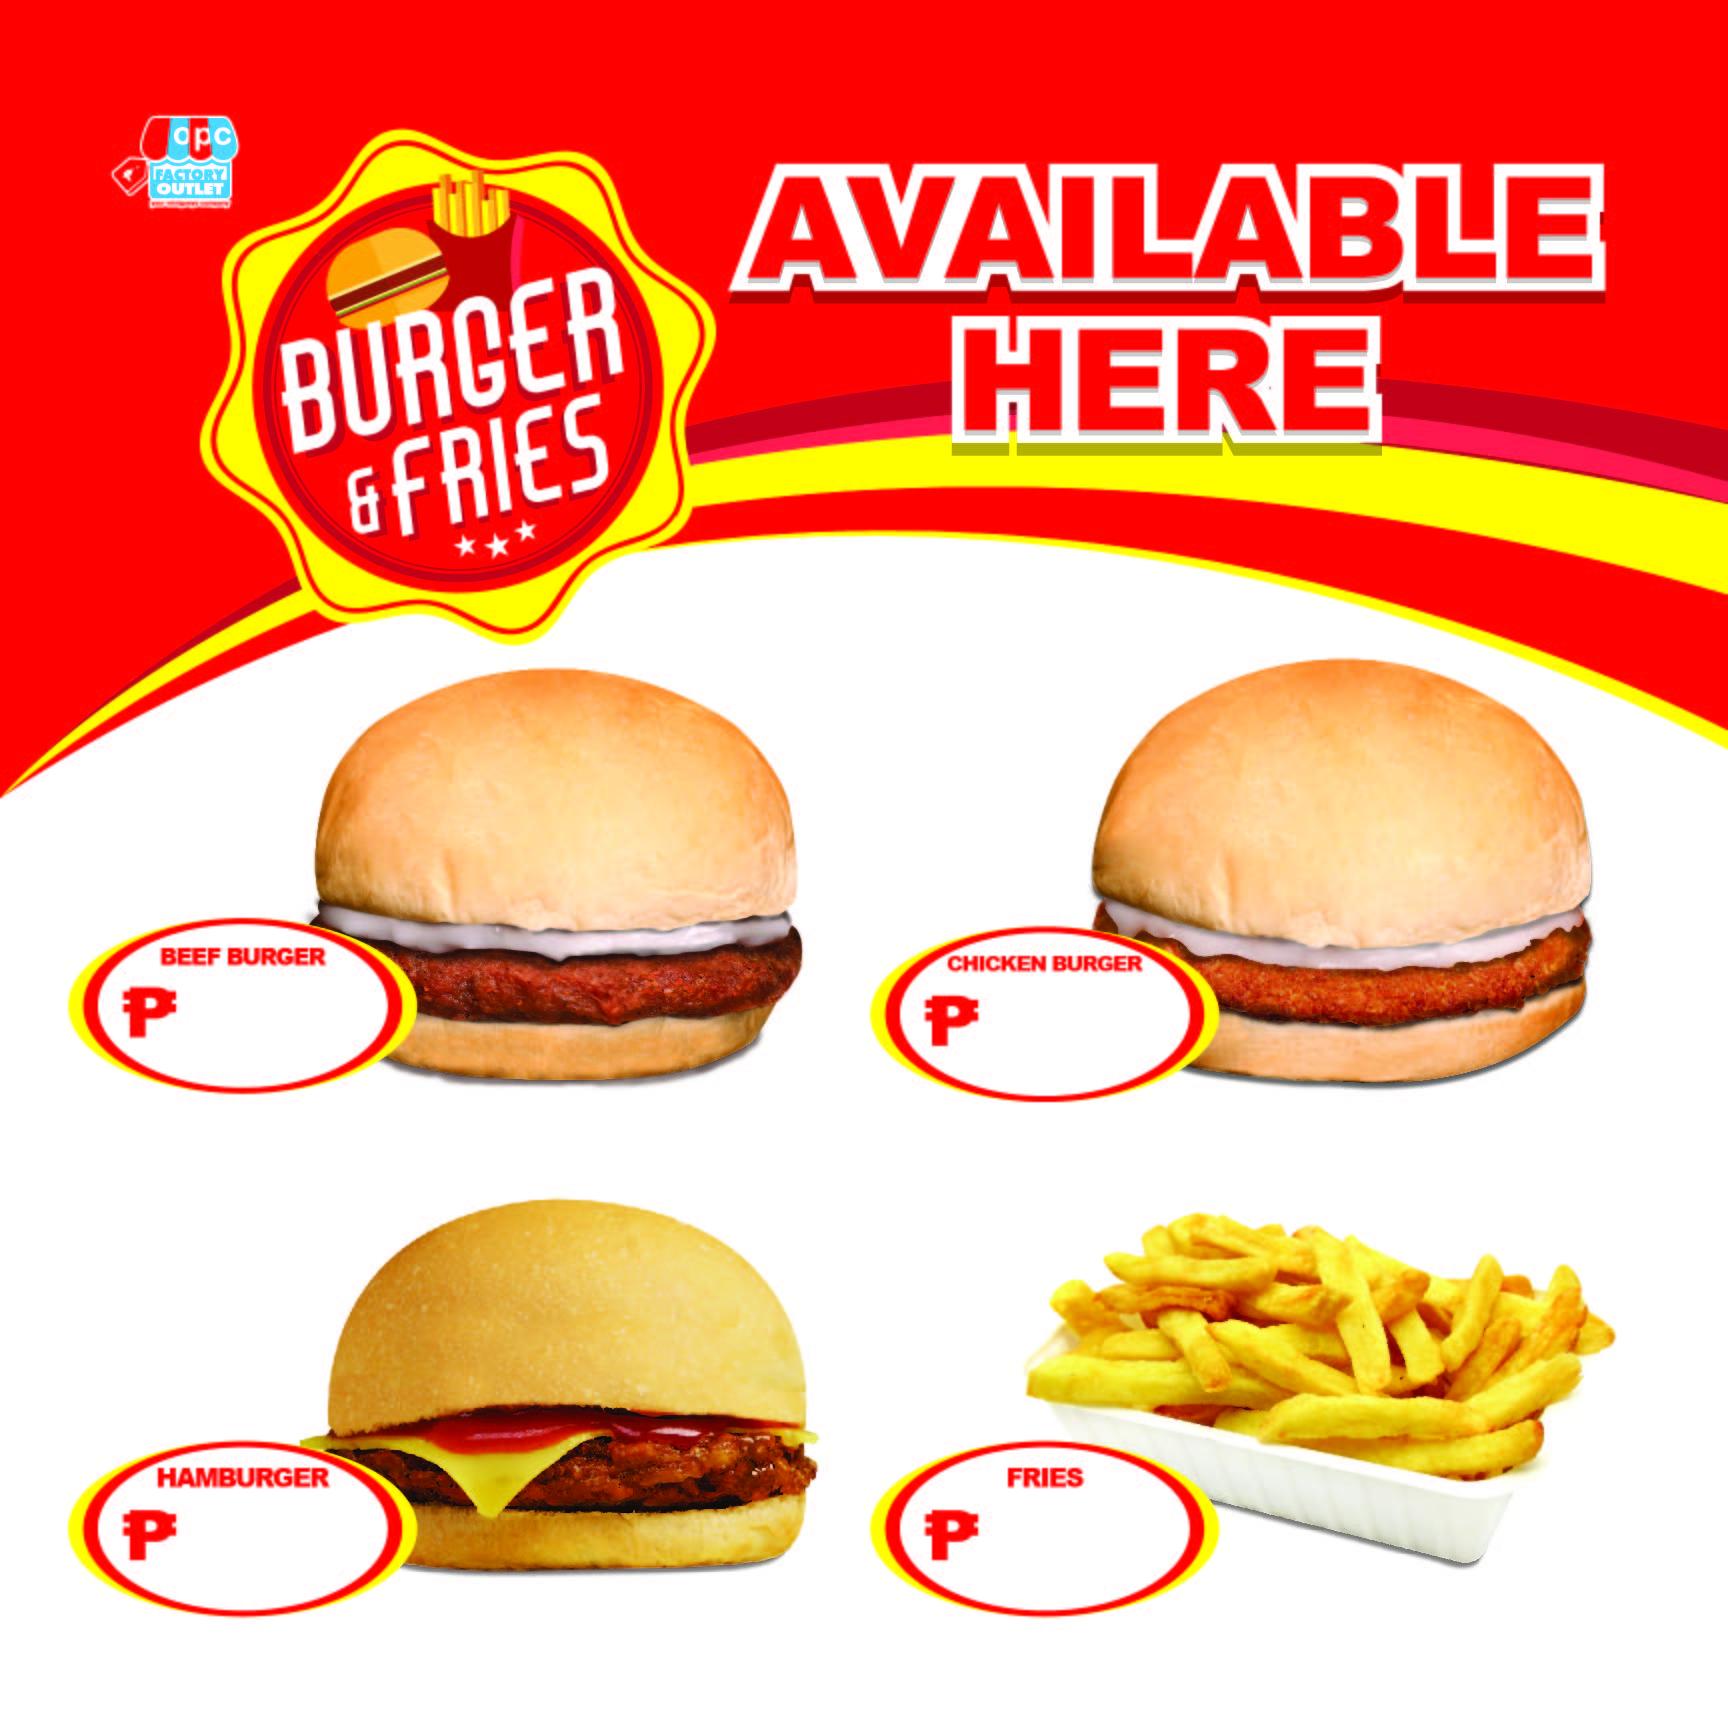 OPC Burger and Fries Menu Tarp 17x17 in